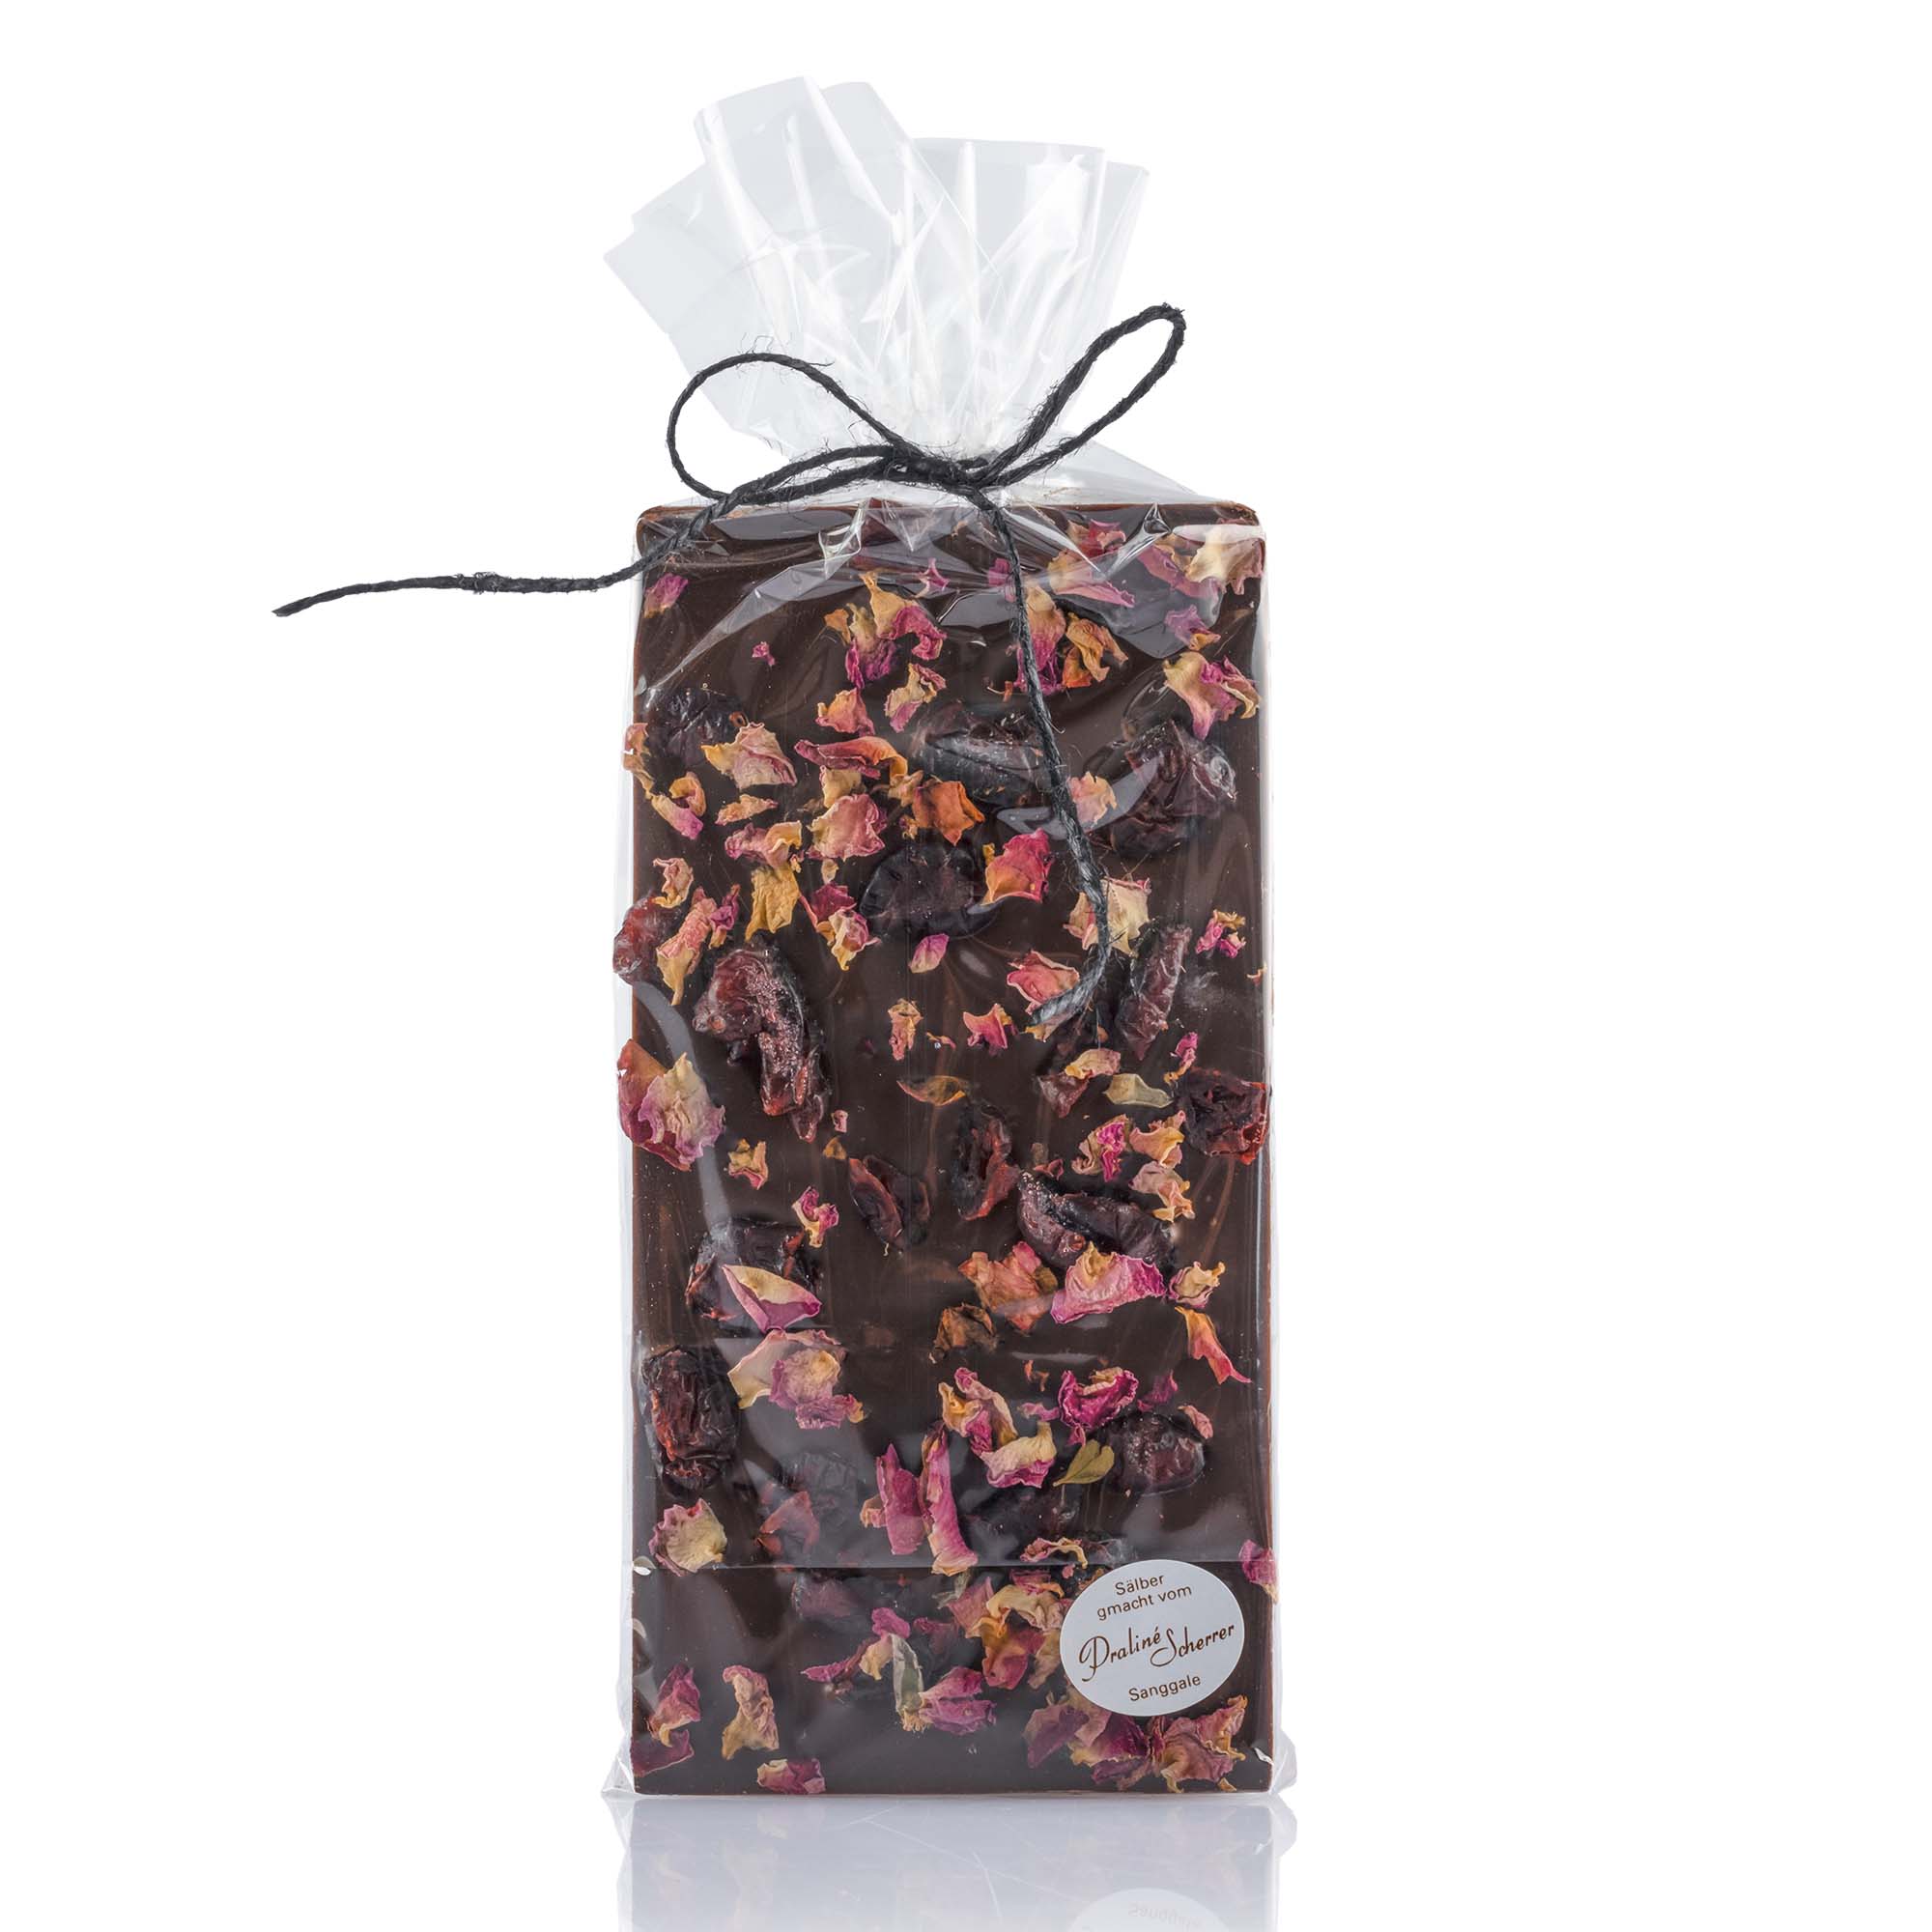 Schokoladentafel handgeschöpft mit Ingwer, Cranberry und Rosenblätter, 100g